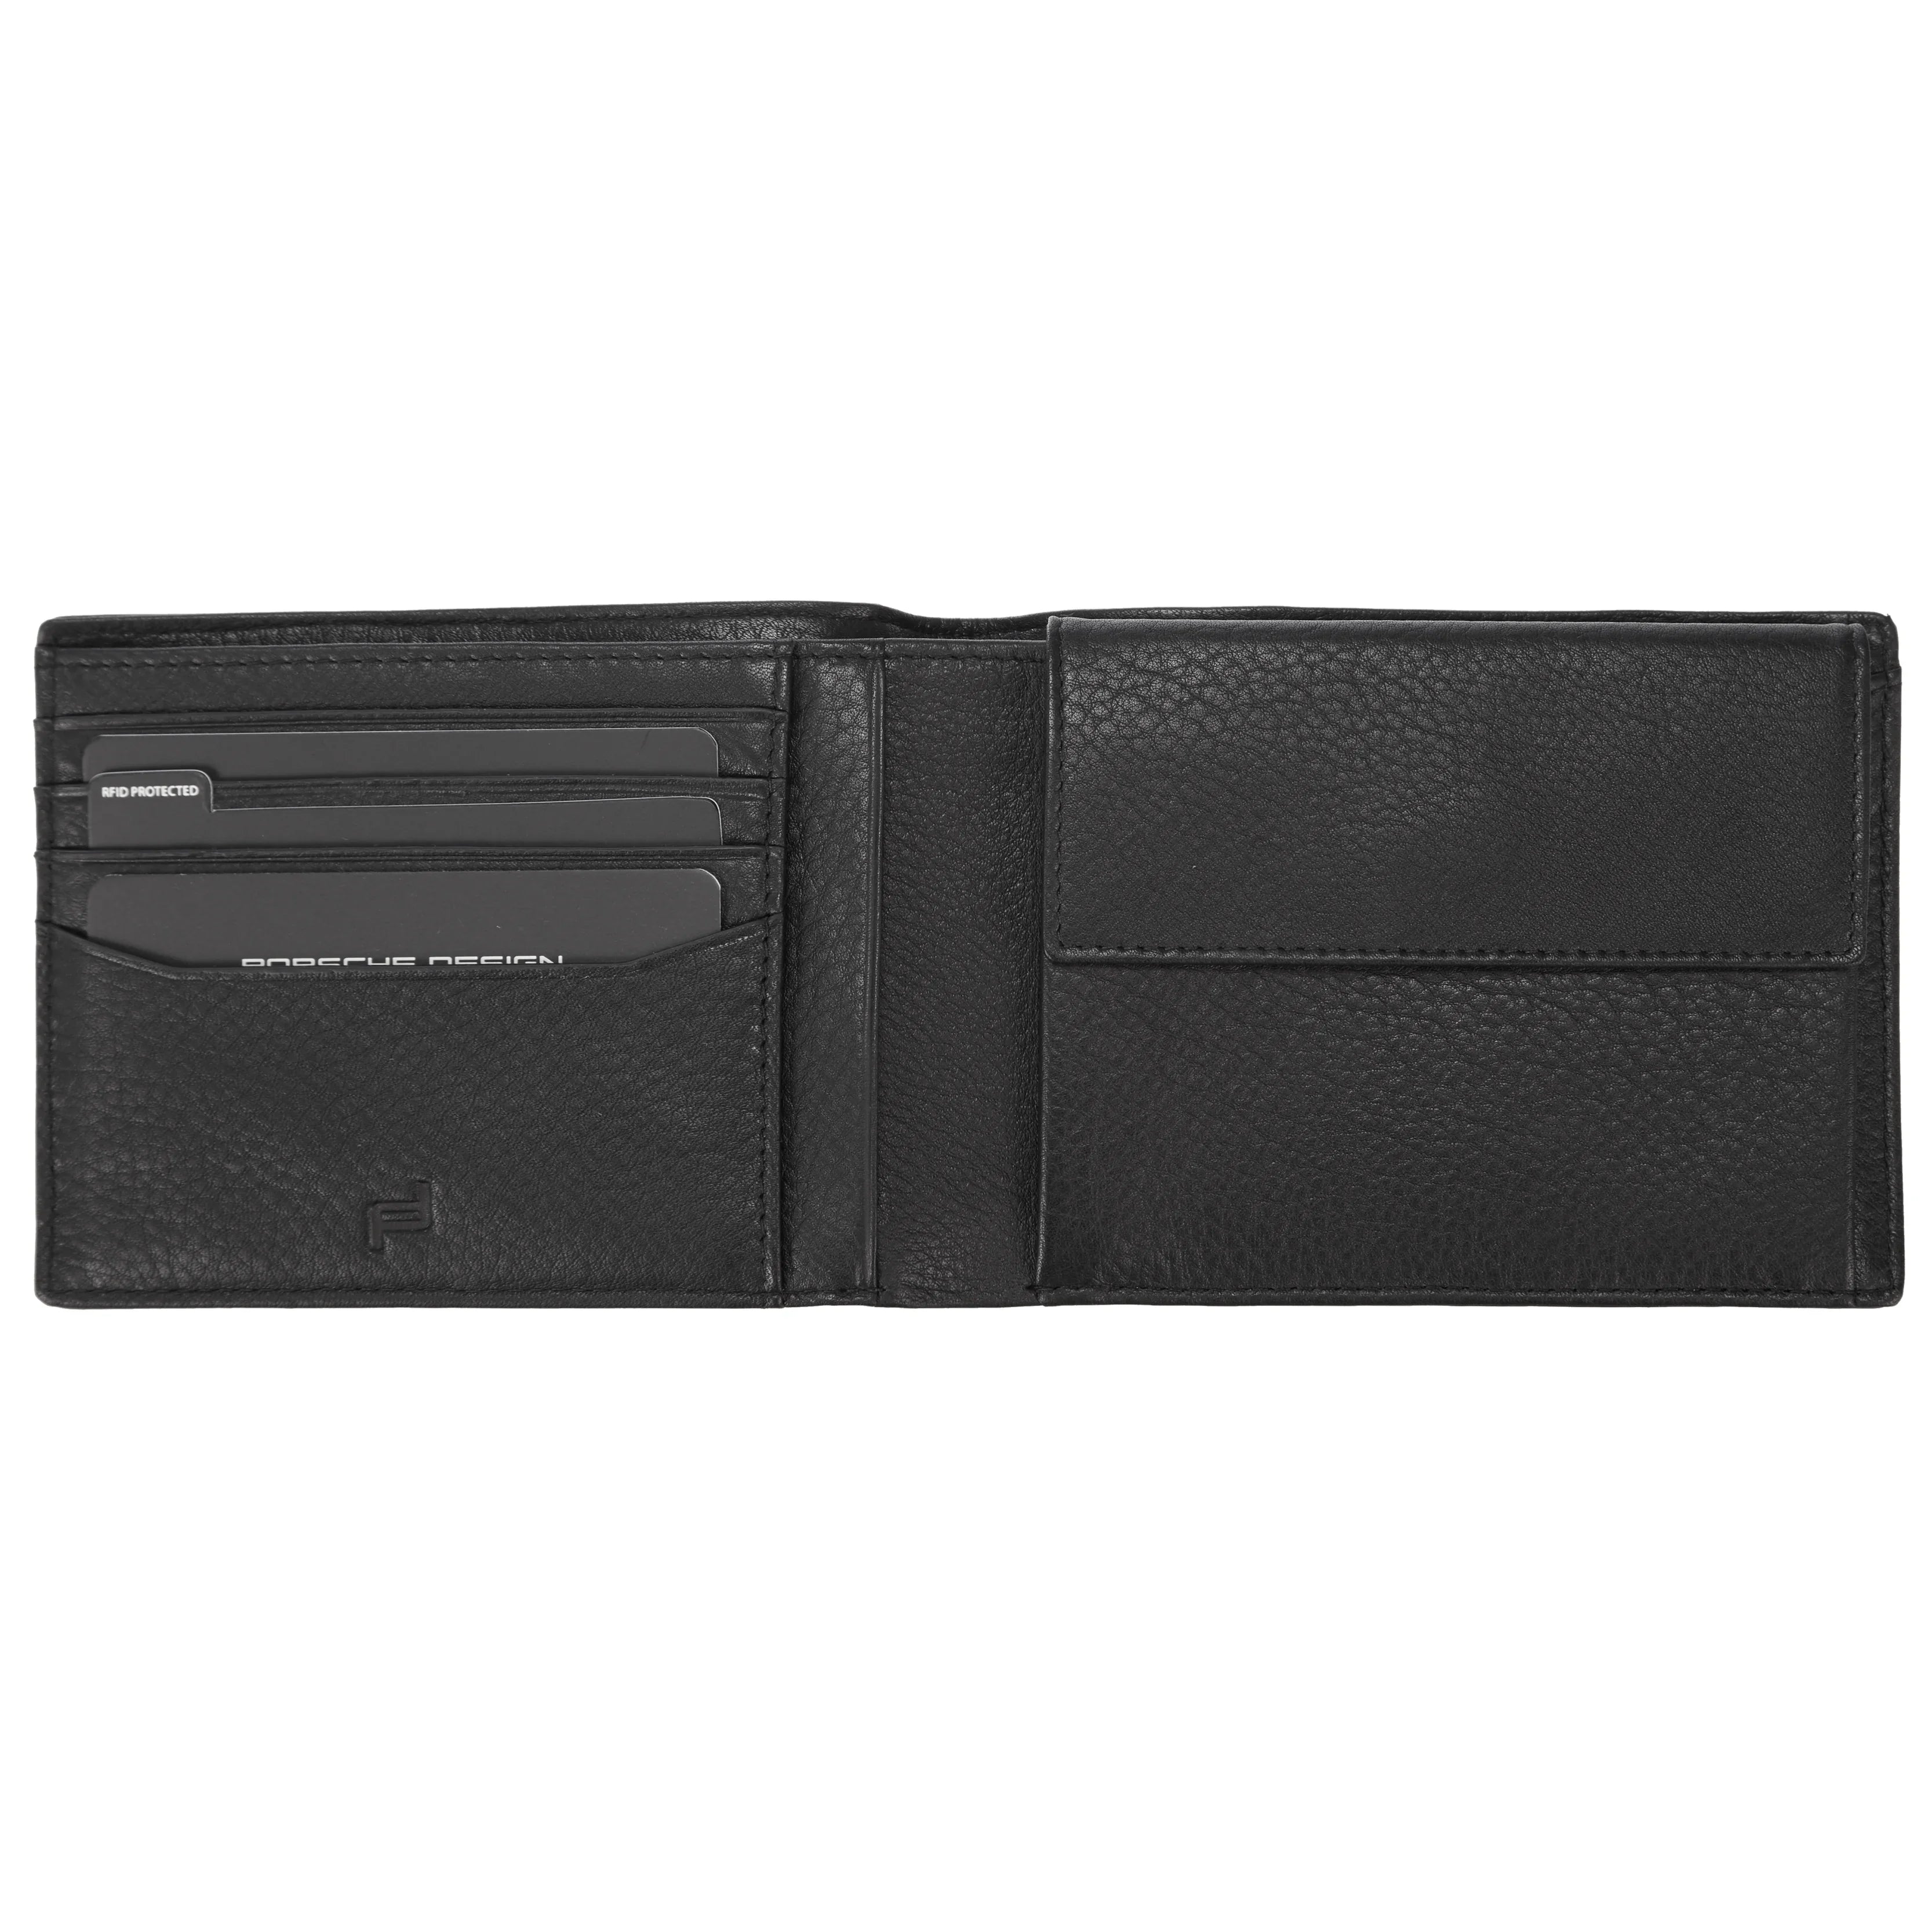 Porsche Design Accessories Business Wallet 4 wide RFID 13 cm - Dark Brown